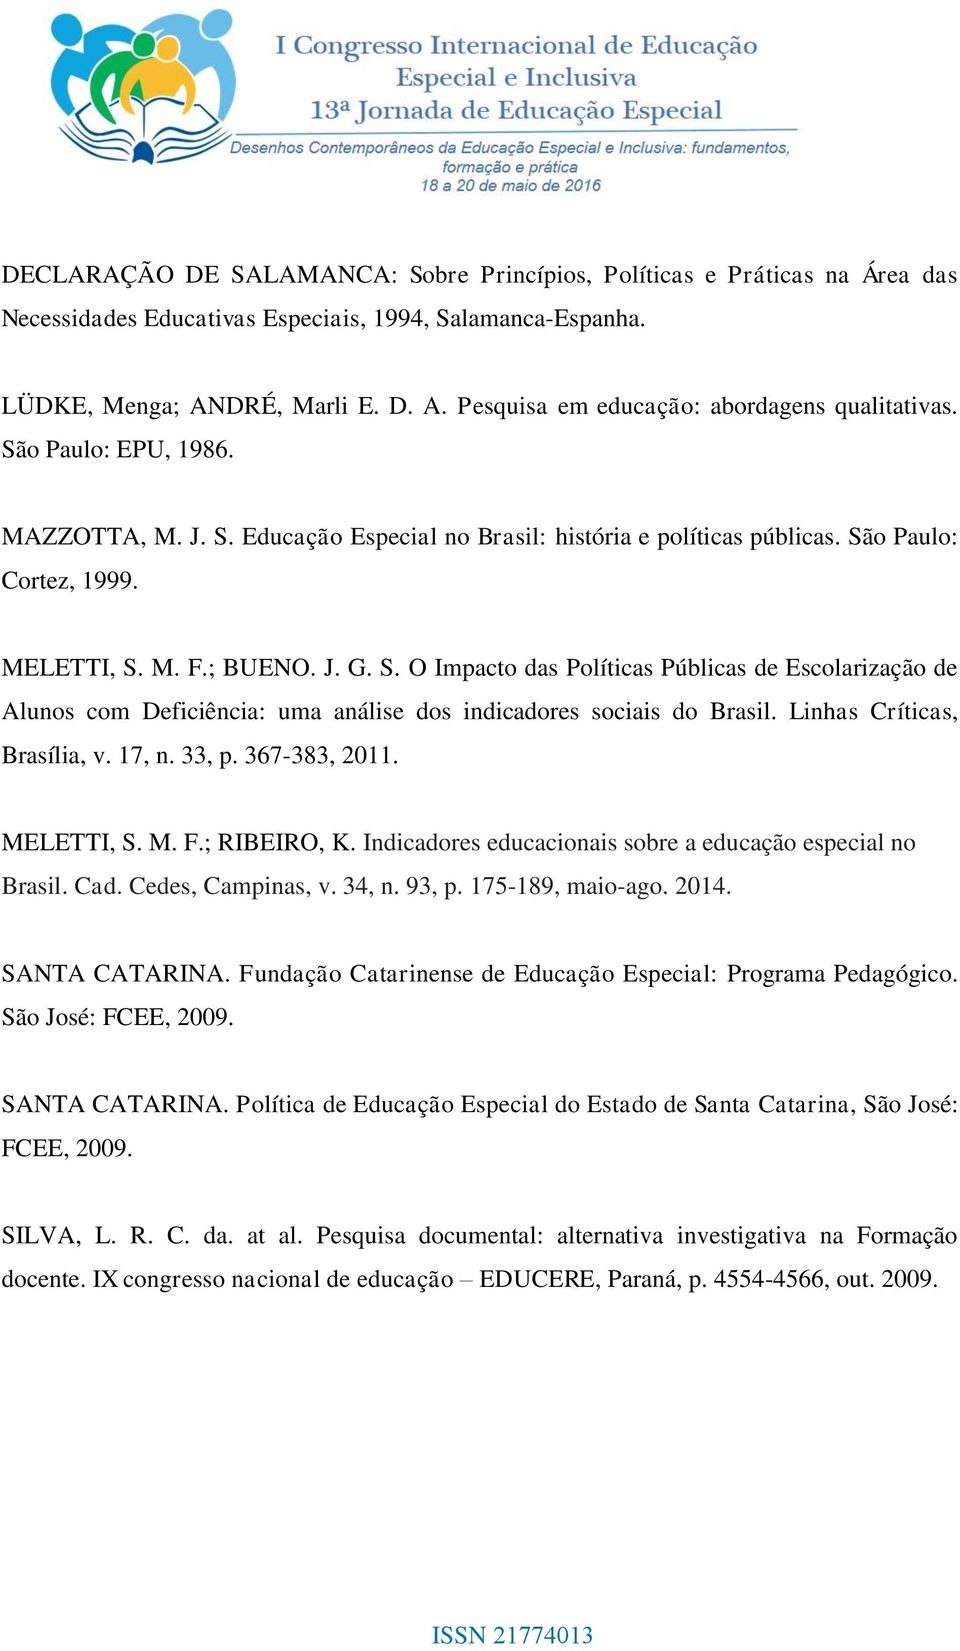 Linhas Críticas, Brasília, v. 17, n. 33, p. 367-383, 2011. MELETTI, S. M. F.; RIBEIRO, K. Indicadores educacionais sobre a educação especial no Brasil. Cad. Cedes, Campinas, v. 34, n. 93, p.